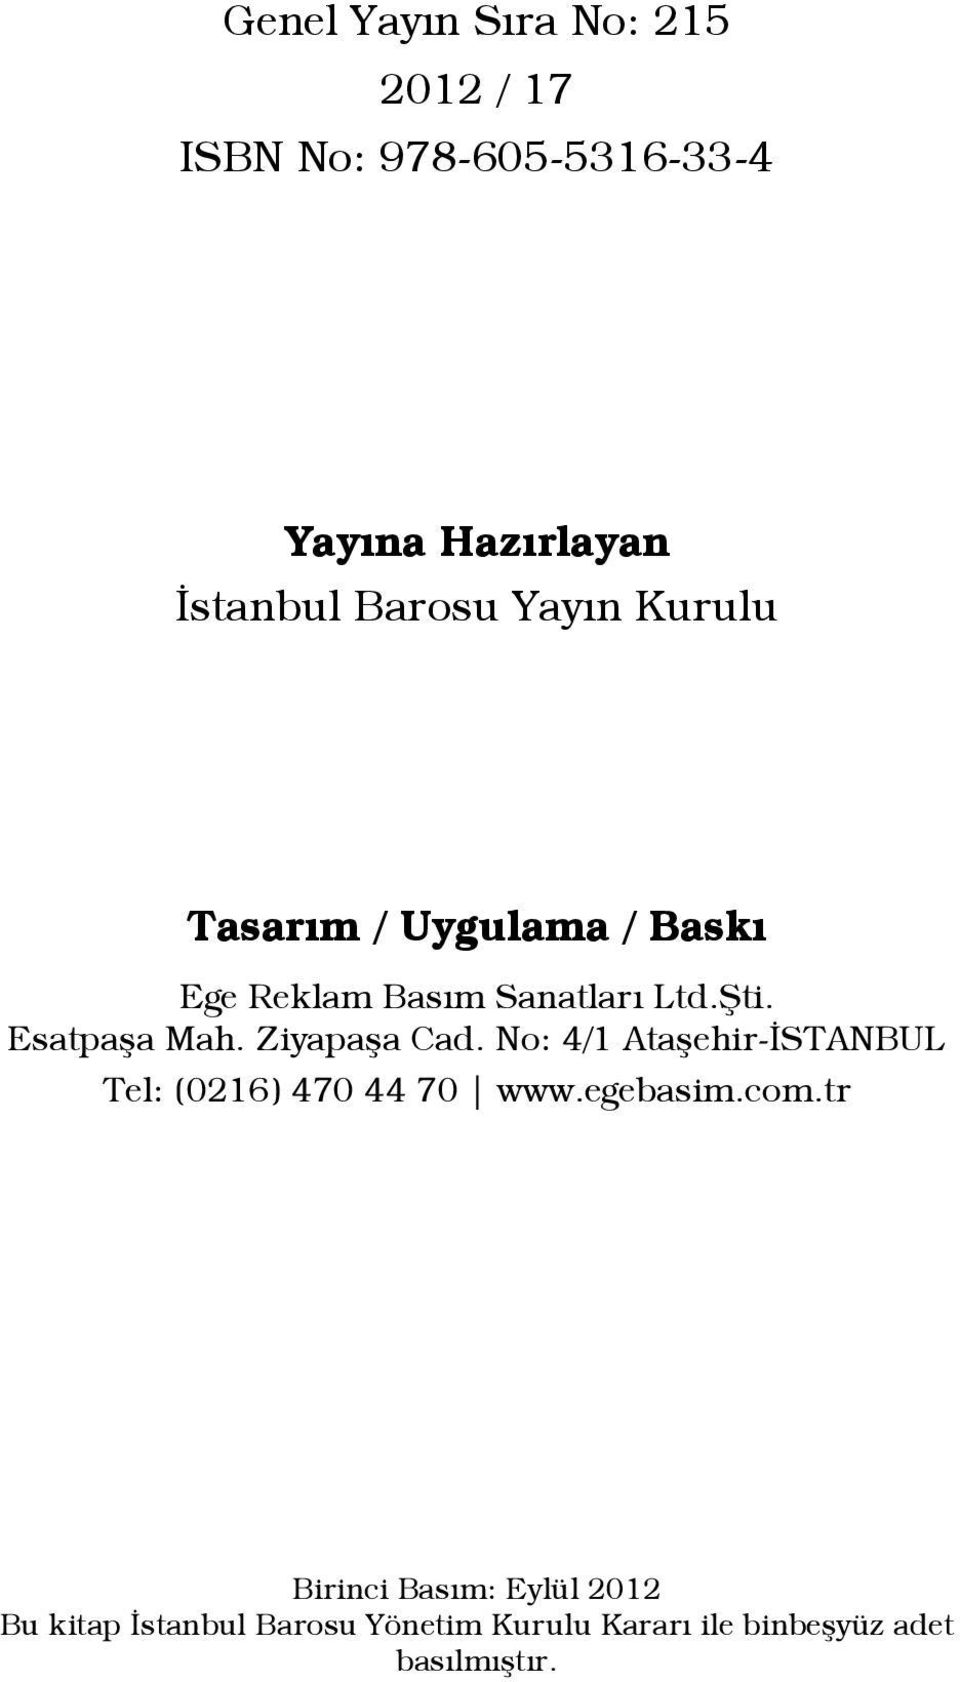 Esatpaşa Mah. Ziyapaşa Cad. No: 4/1 Ataşehir-İSTANBUL Tel: (0216) 470 44 70 www.egebasim.com.